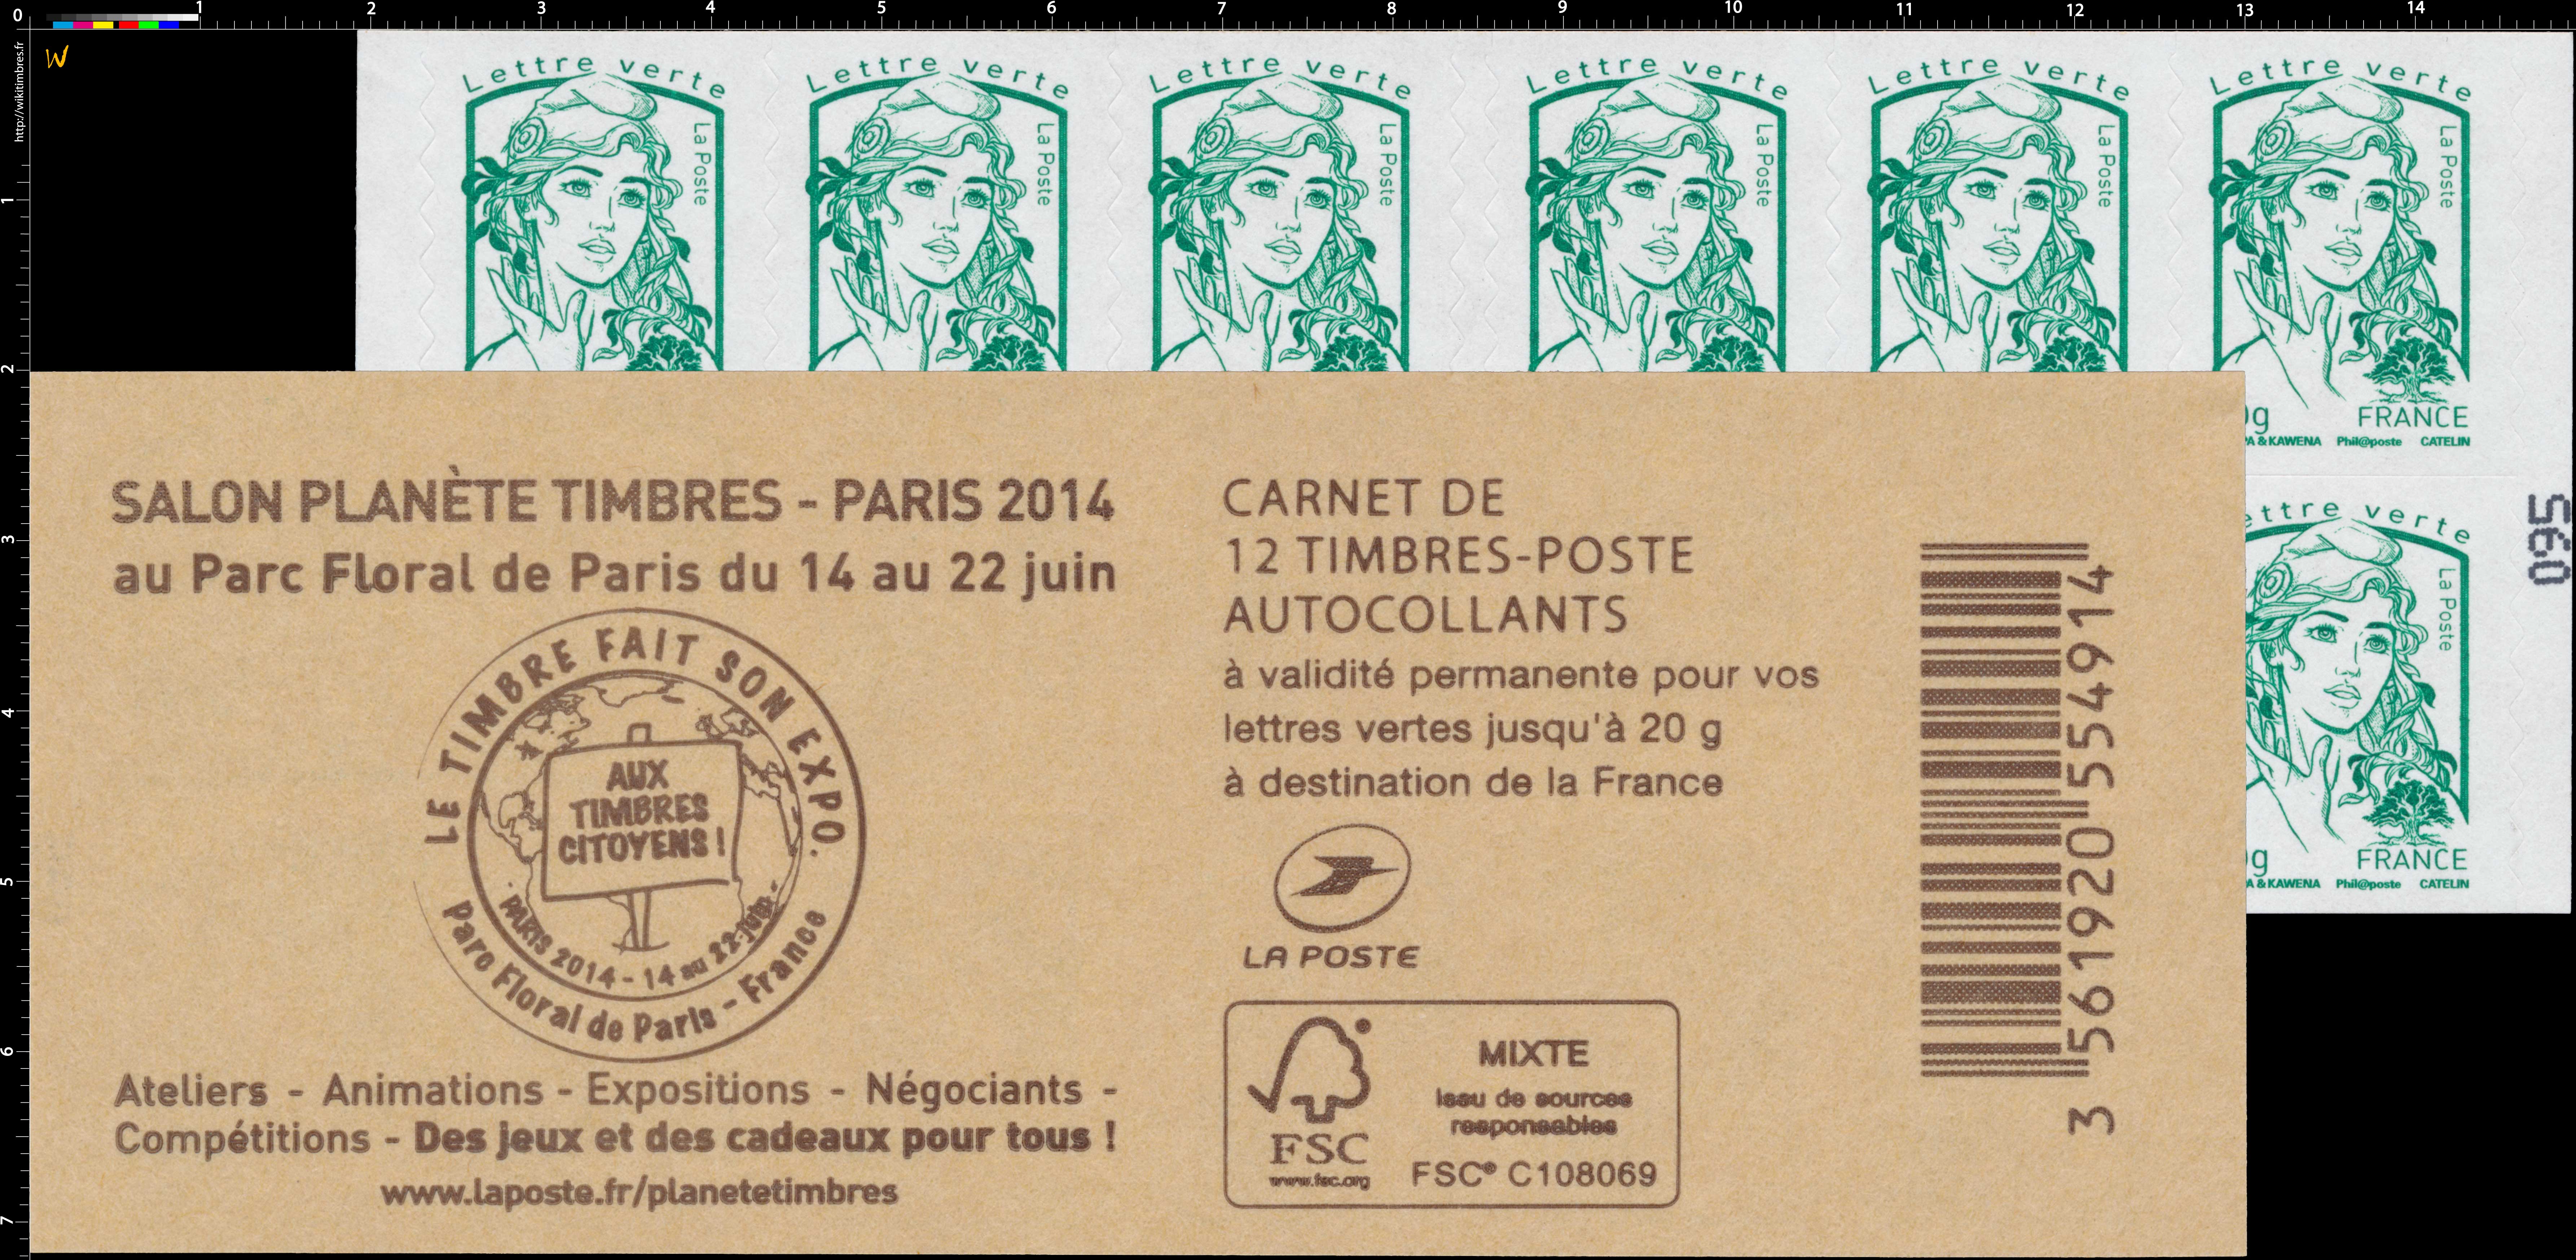 Carnet Salon planète timbres au Parc Floral de Paris du 14 au 22 juin 2014